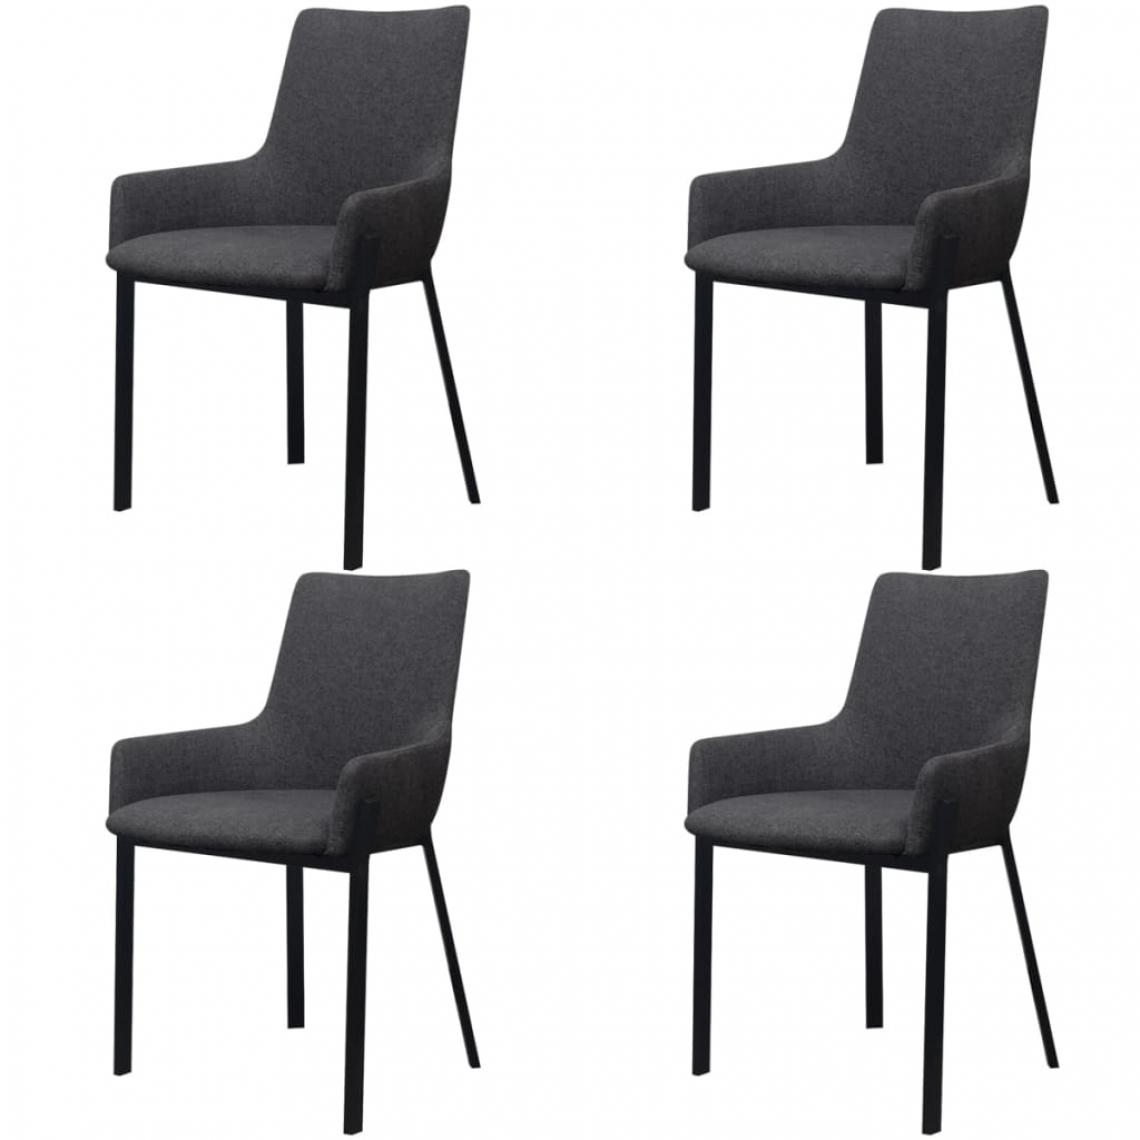 Decoshop26 - Lot de 4 chaises de salle à manger cuisine design simple en tissu gris foncé CDS021551 - Chaises